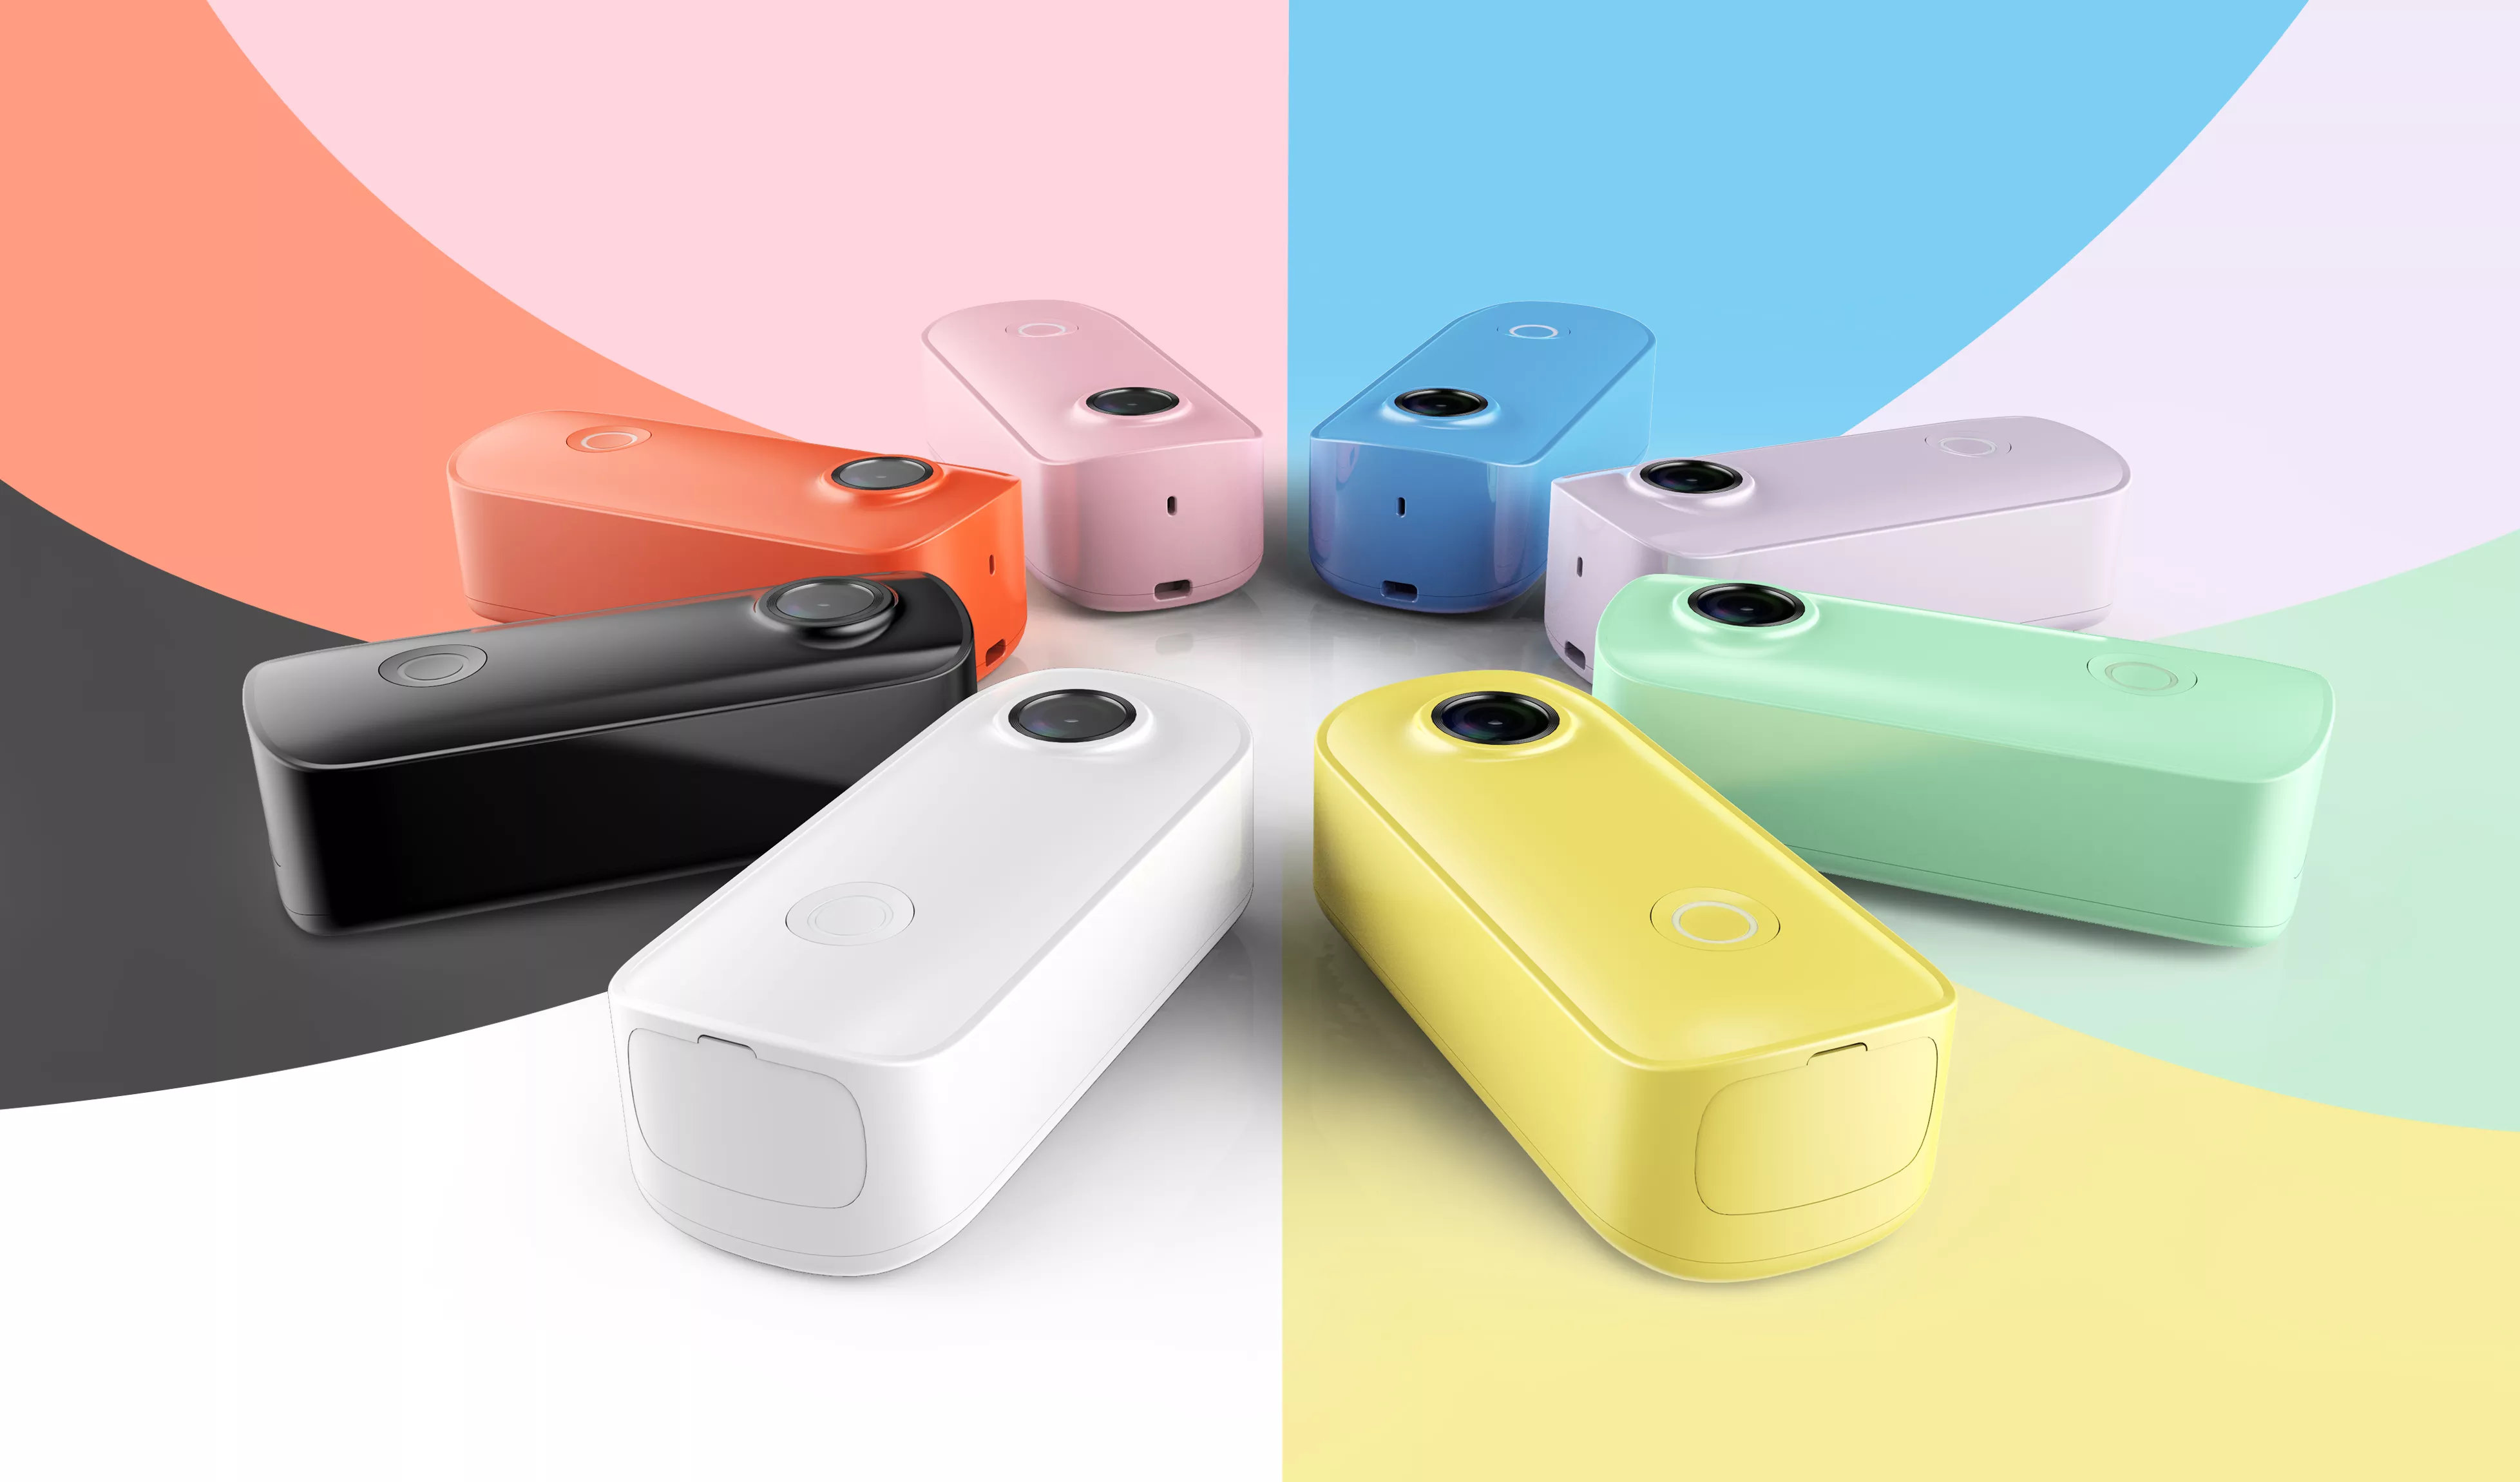 Akční kameru SJCAM C100+ si dokonale sladíte se svým outfitem, kdy si můžete vybrat z 8 různých barevných provedení – černá, bílá, modrá, zelená, žlutá, červená, fialová a růžová.